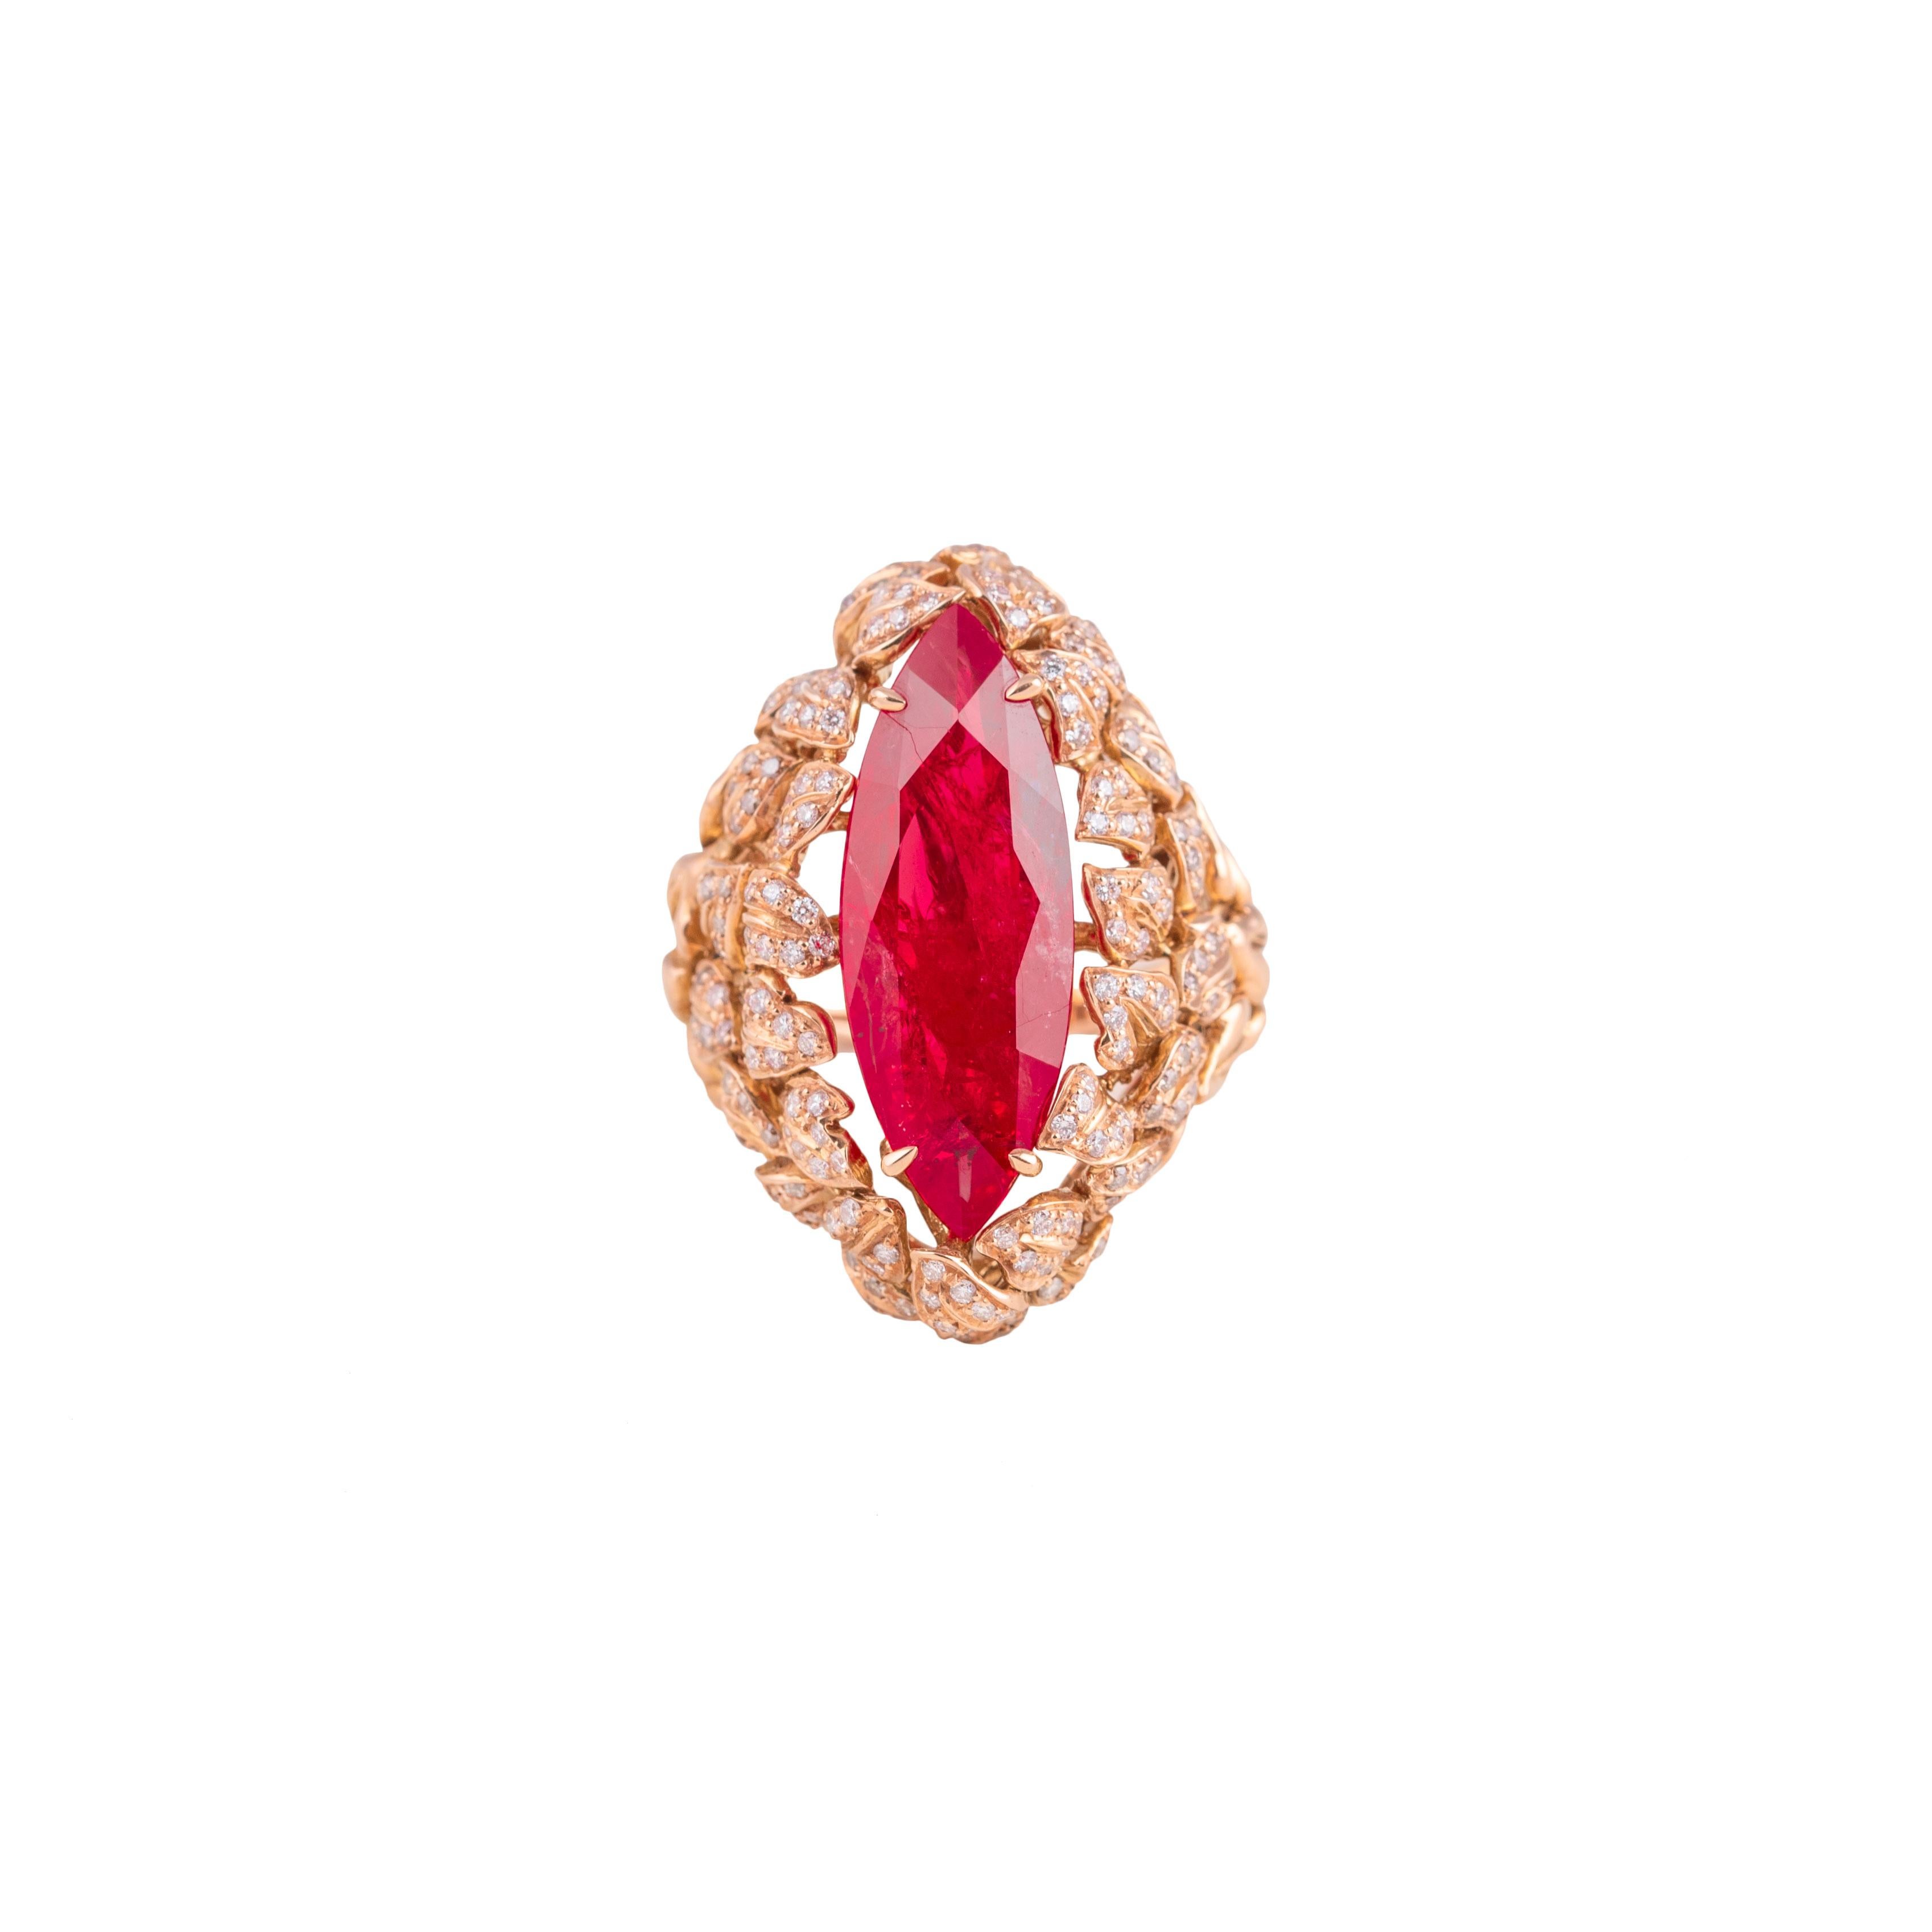 Questo anello fantasia è stato realizzato in Italia da Fanuele Gioielli.
Realizzato interamente in oro rosa 18 carati, la parte superiore del gambo è decorata con foglie su cui vi sono incastonati diamanti bianchi taglio brillante alternati a